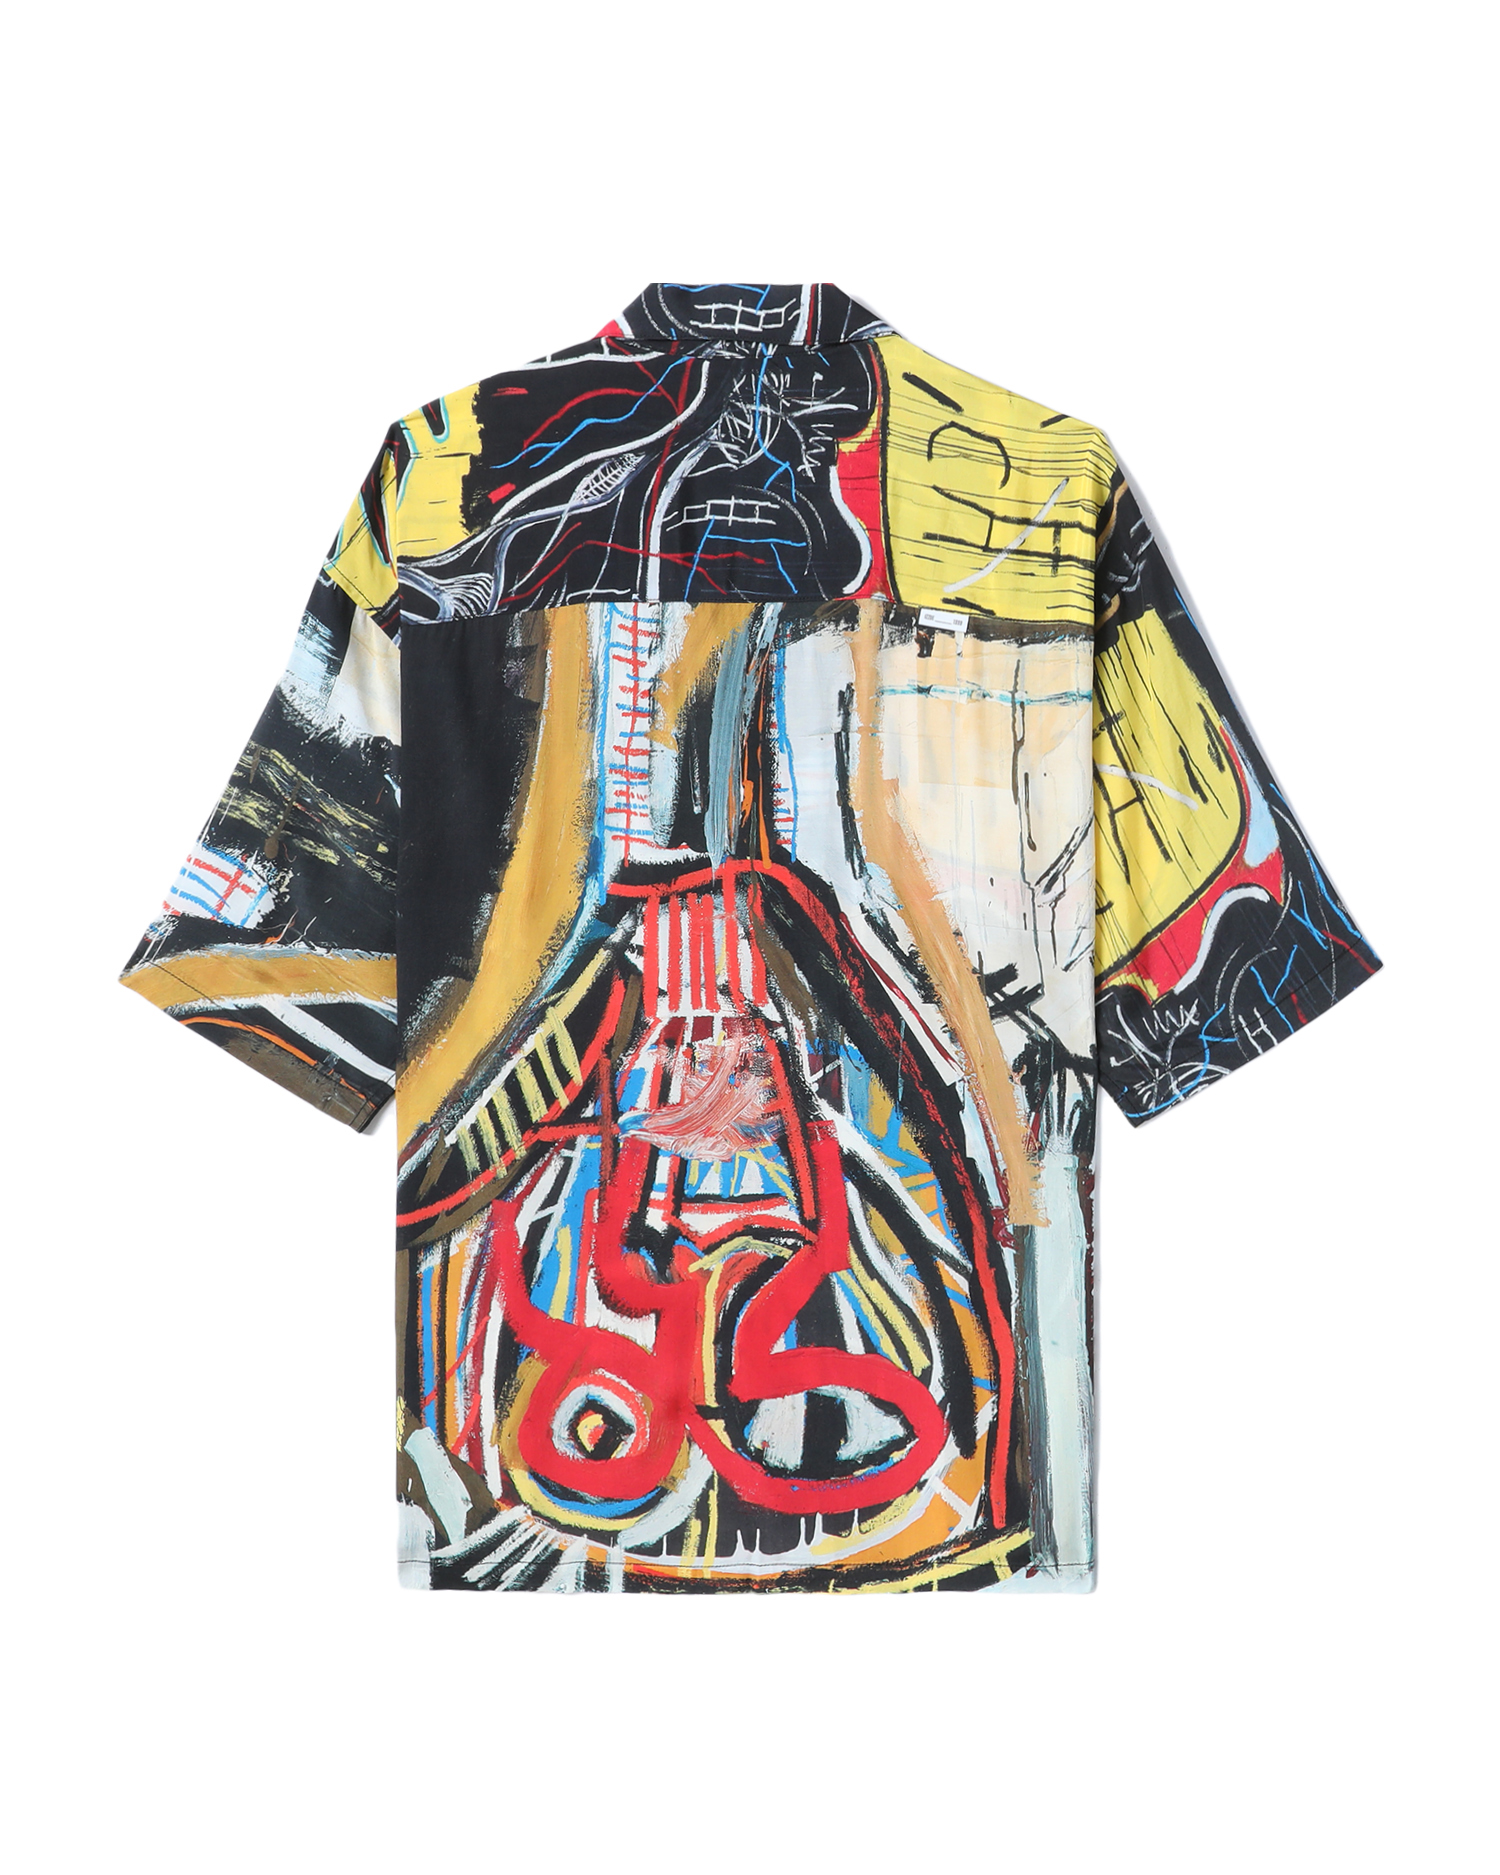 IZZUE Bestsellers X Jean-Michel Basquiat graphic shirt ⇔ guarantee of ...